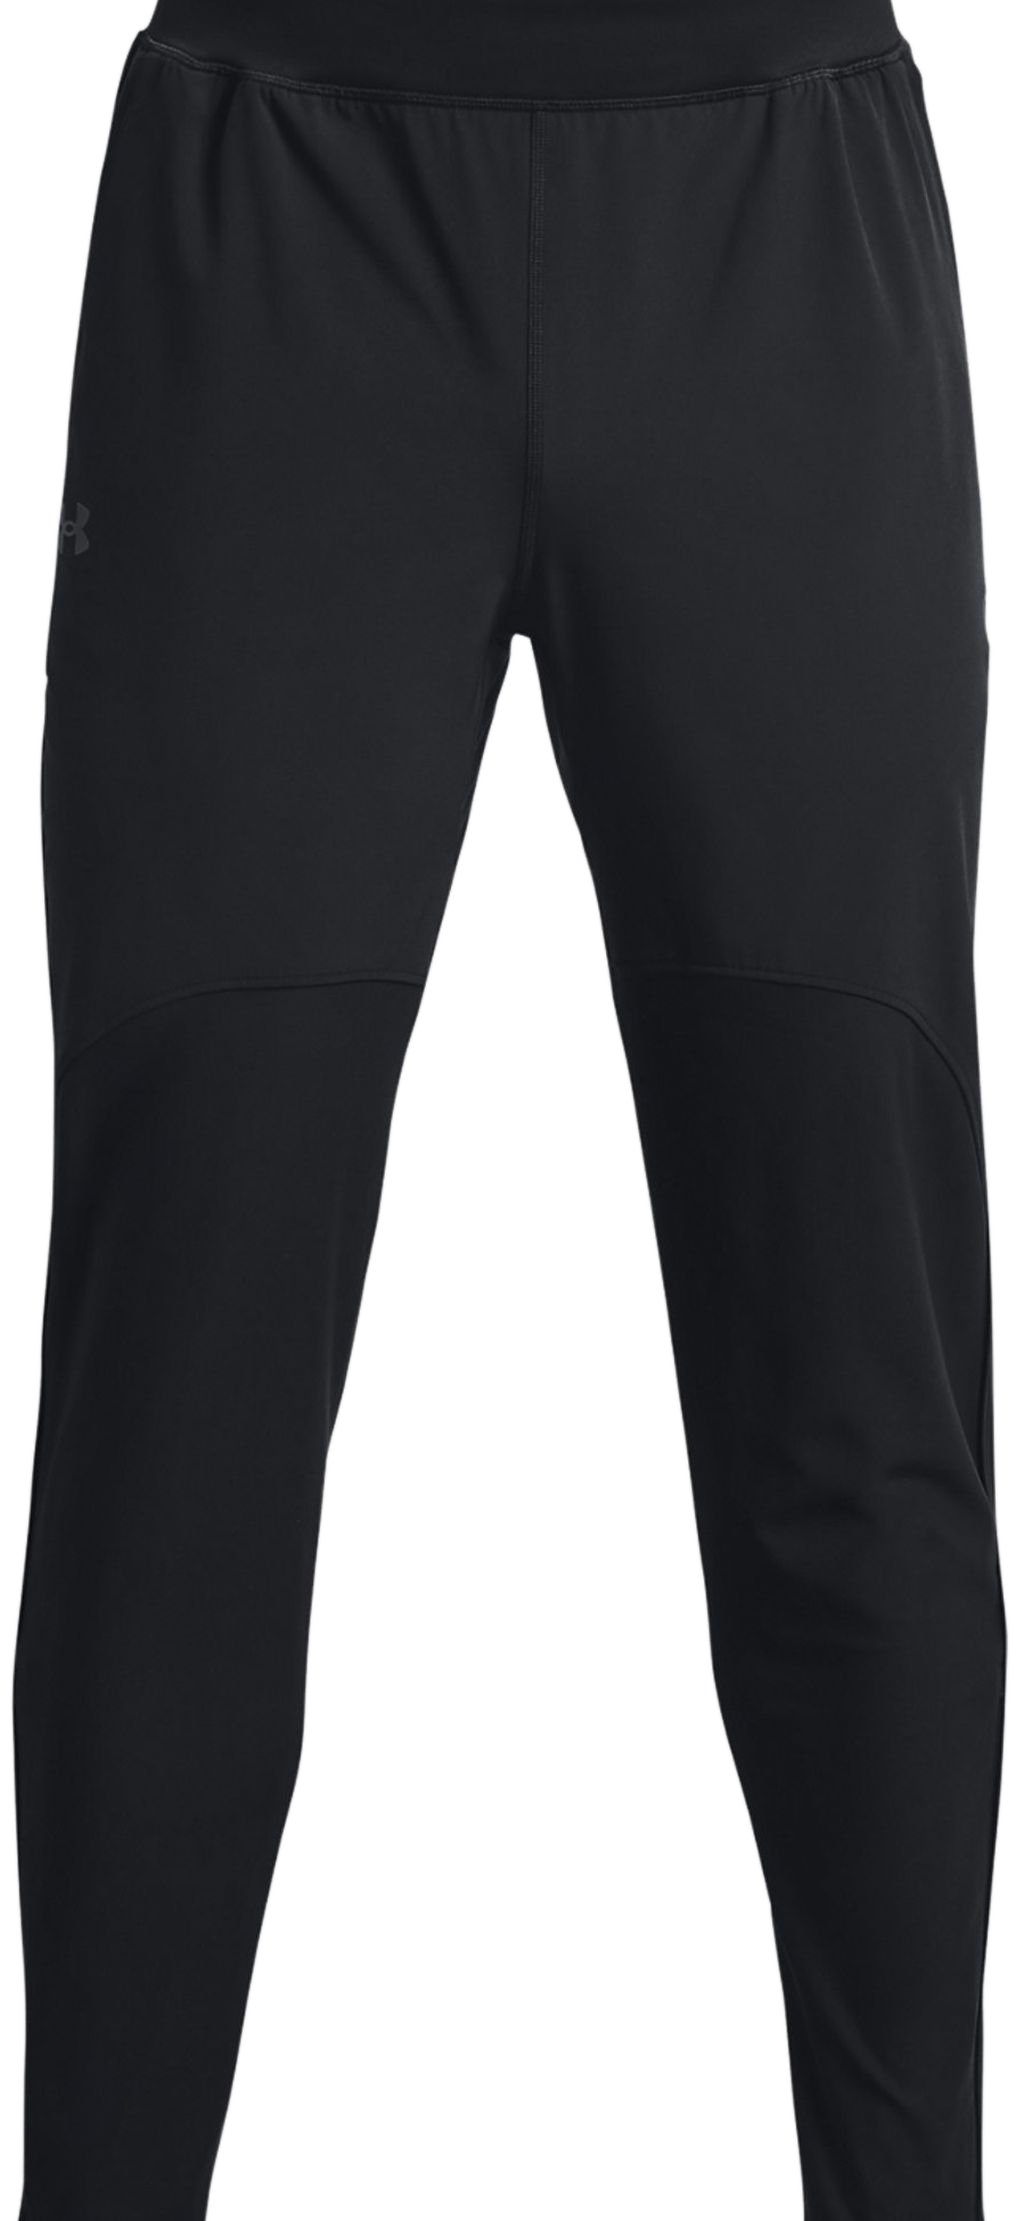 Men's trousers Under Armour Men's Qualifier Run 2.0 Pants - black/reflective, Tennis Zone